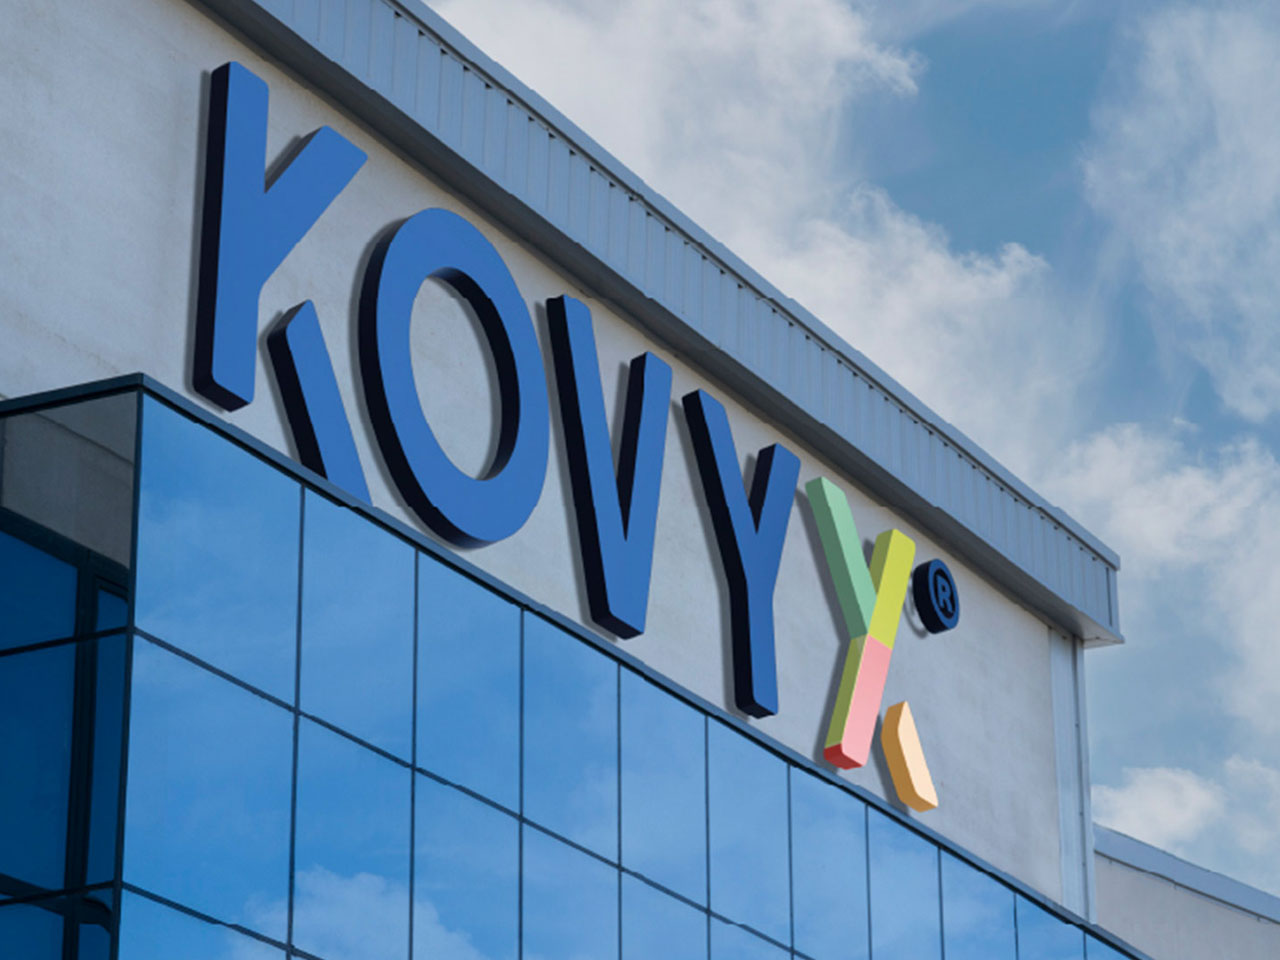 Kovyx offices